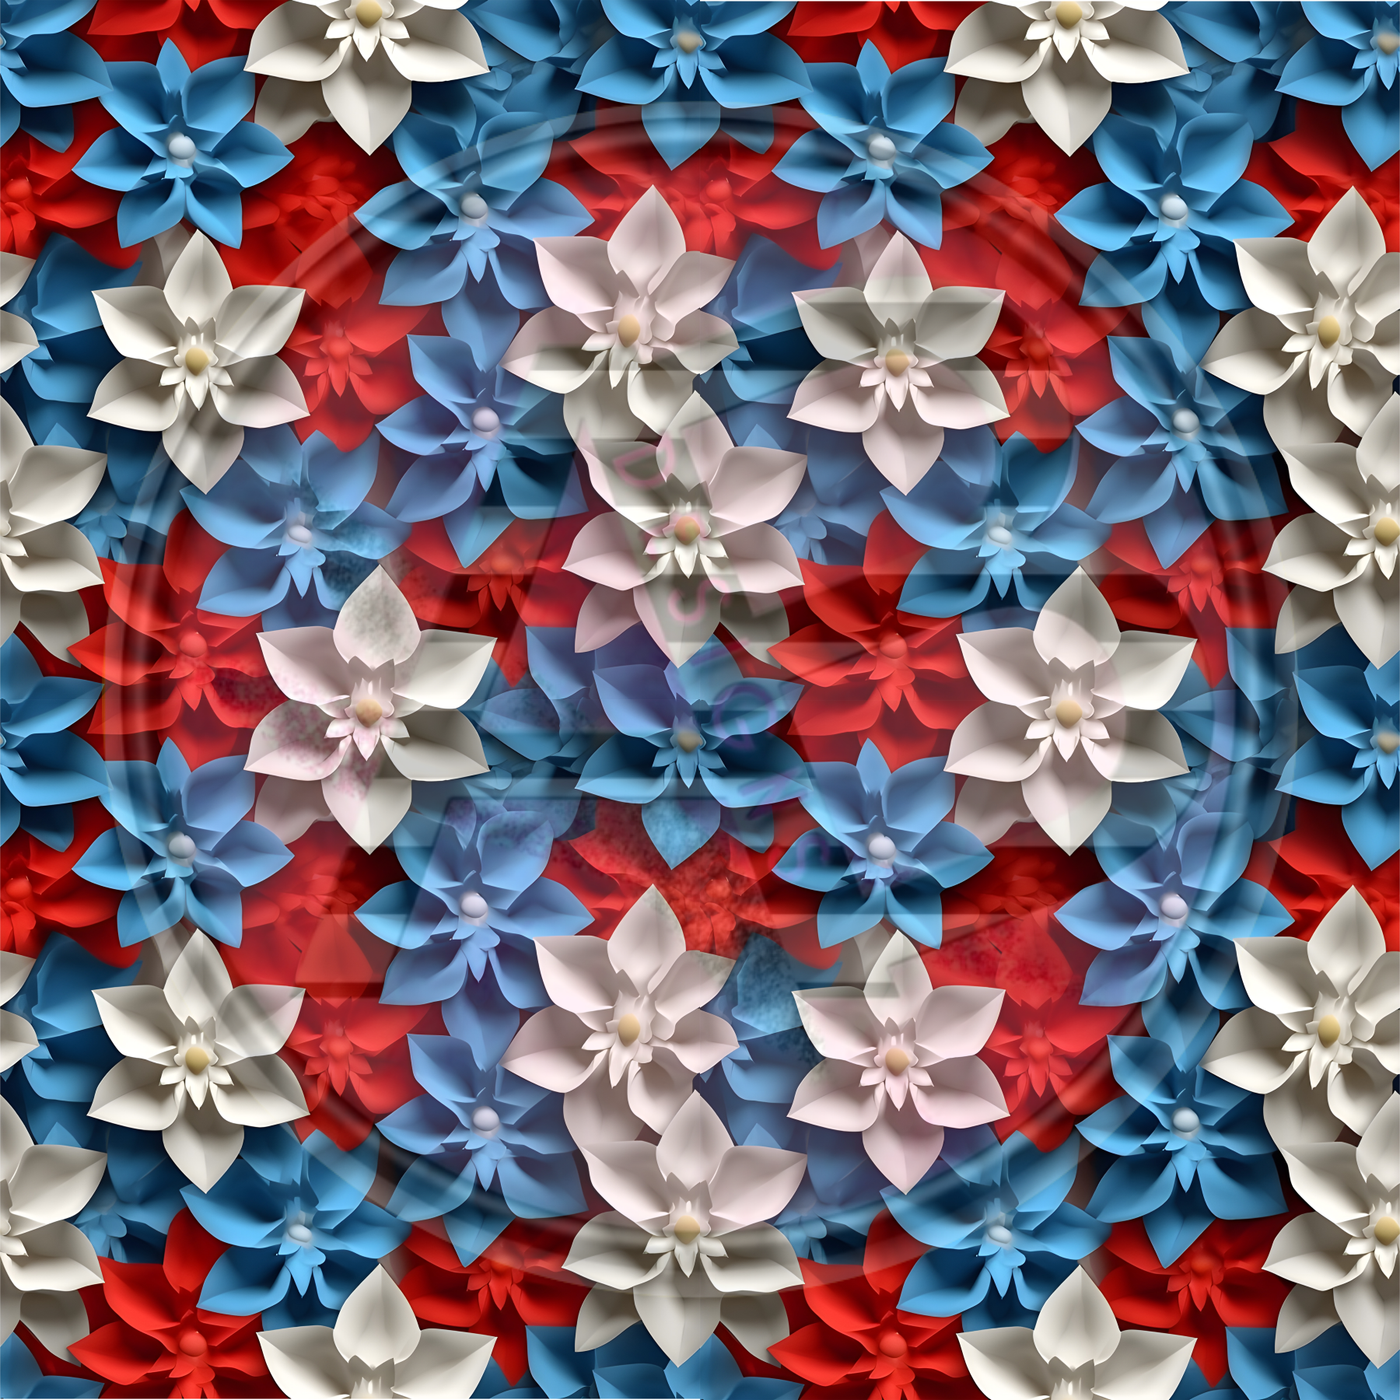 Adhesive Patterned Vinyl - Patriotic Floral 02